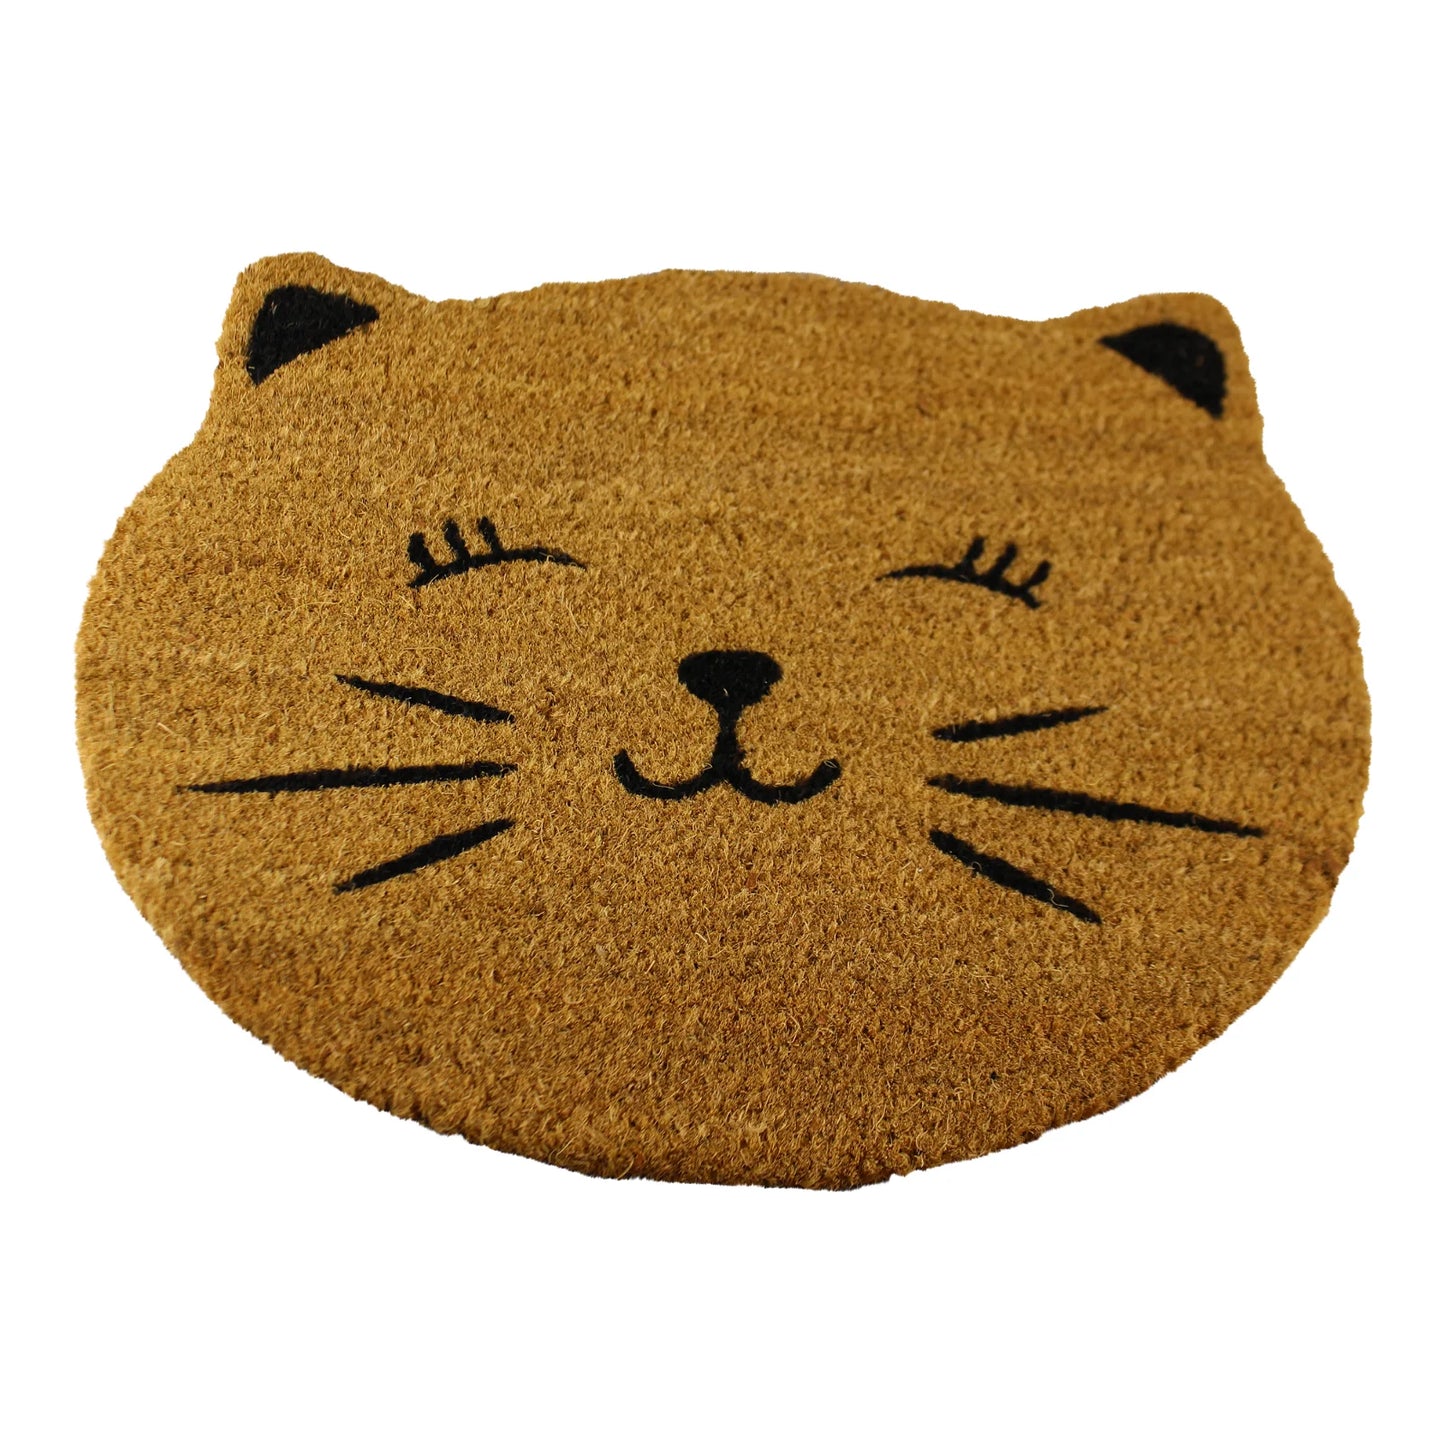 Coir Doormat, Cat Smile Design